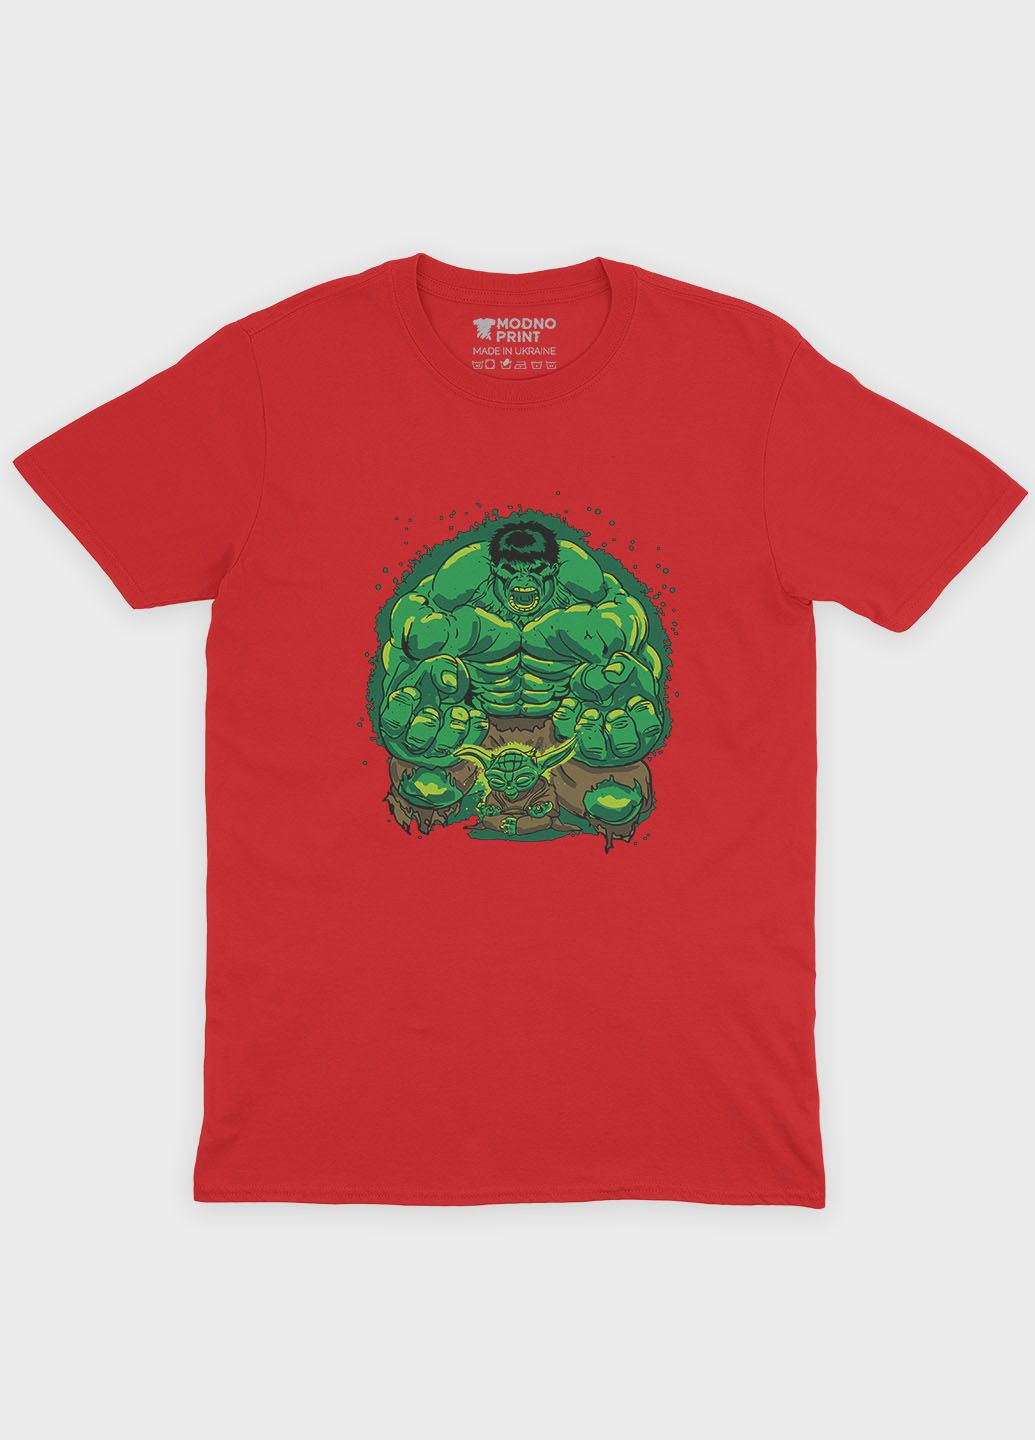 Красная демисезонная футболка для мальчика с принтом супергероя - халк (ts001-1-sre-006-018-003-b) Modno